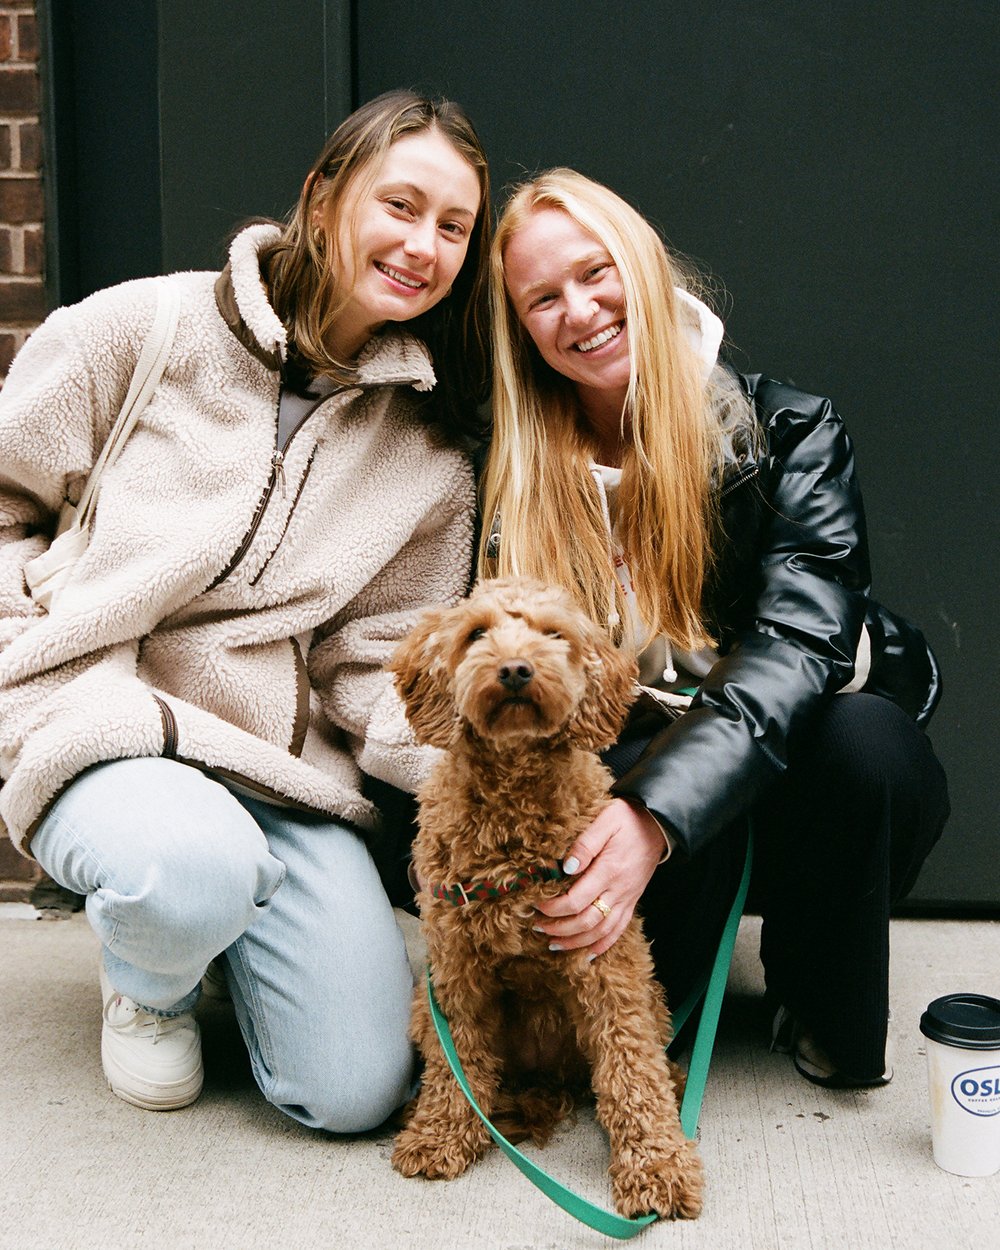 Meredith Kalhor, Allison Qisniewski, and dog, Phebe